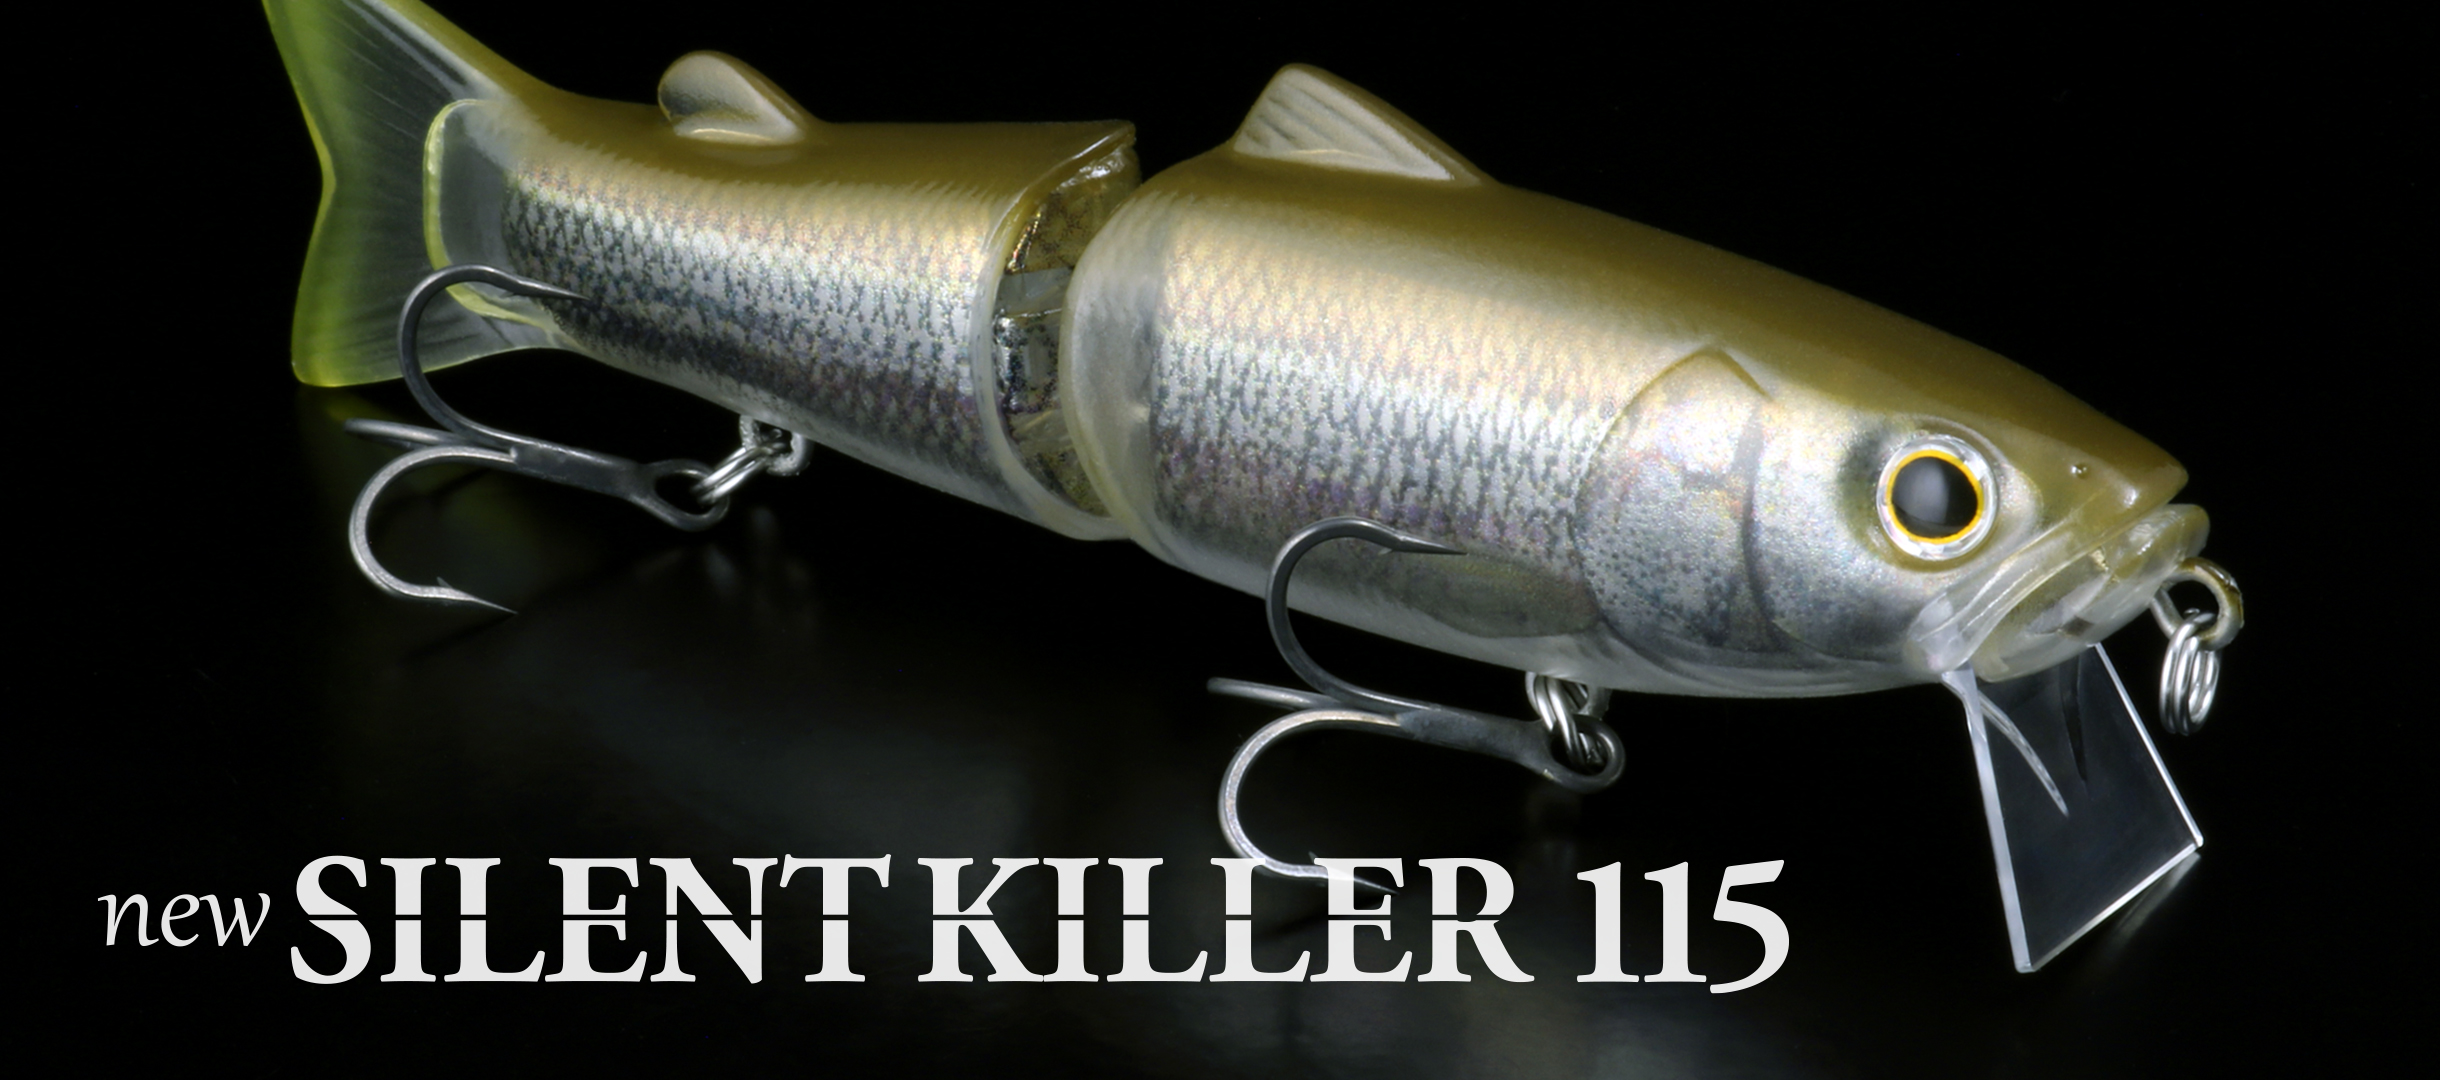 deps-new-silent-killer115